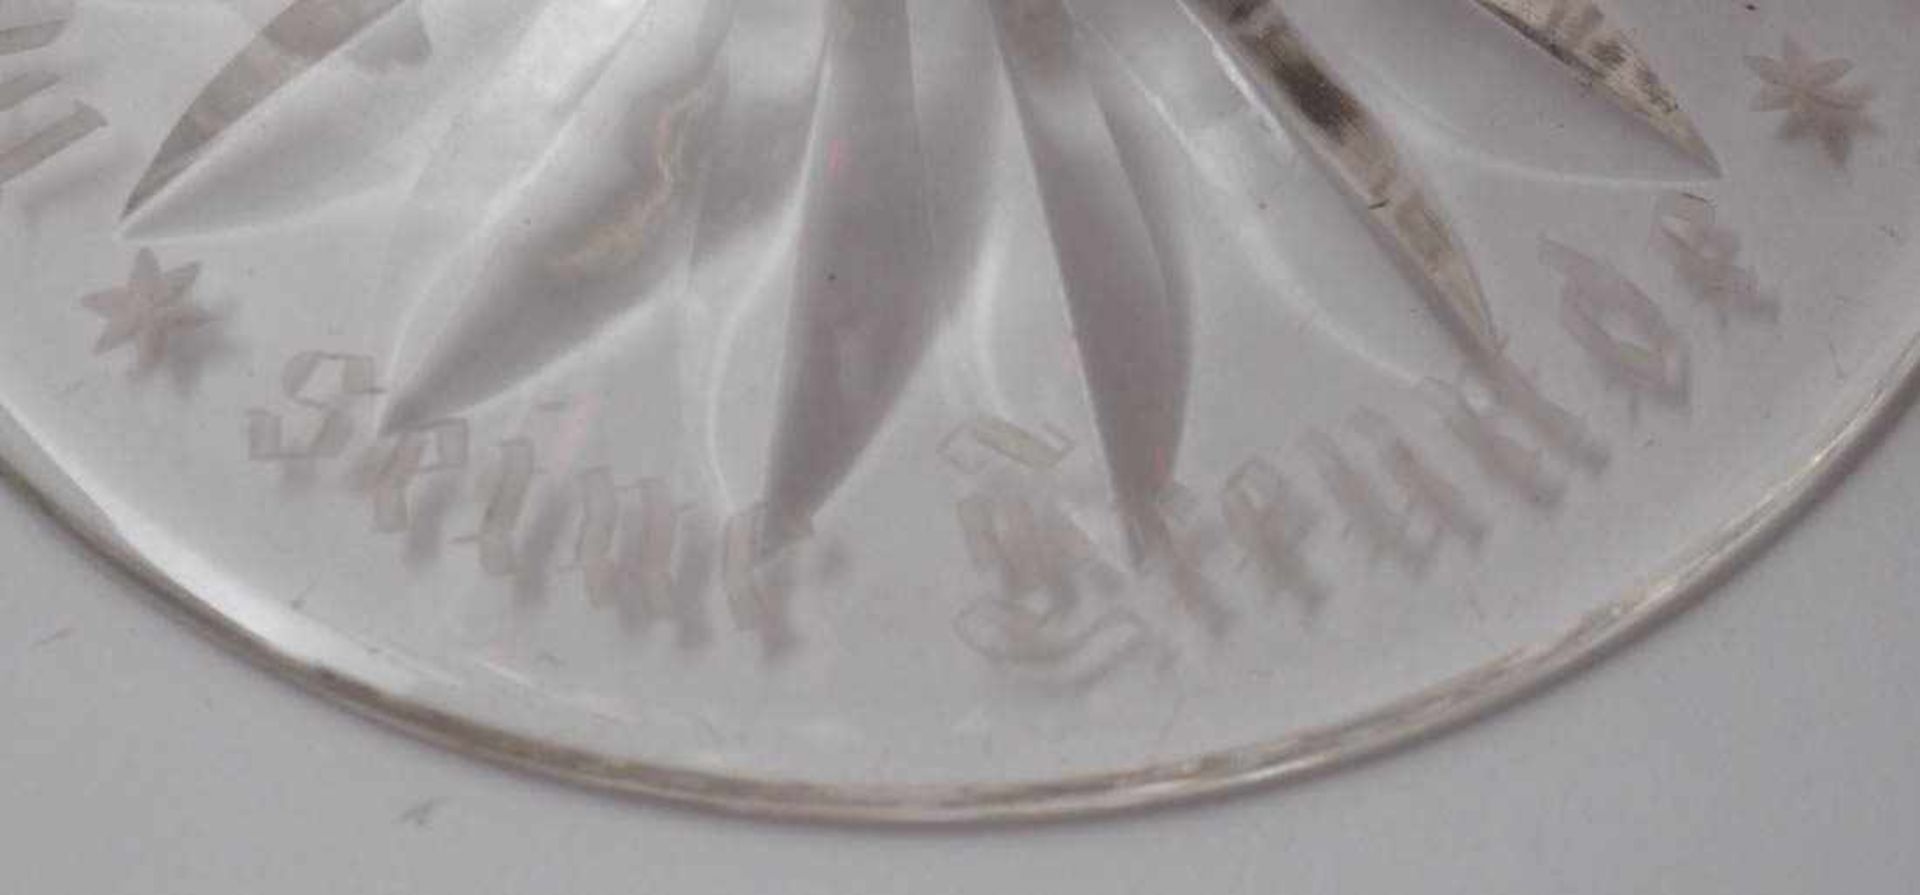 Pokalglas, dat. 1941 Flacher Standfuß mit großem Bodenstern, sechskantiger Schaft, konische Kuppa - Bild 3 aus 3